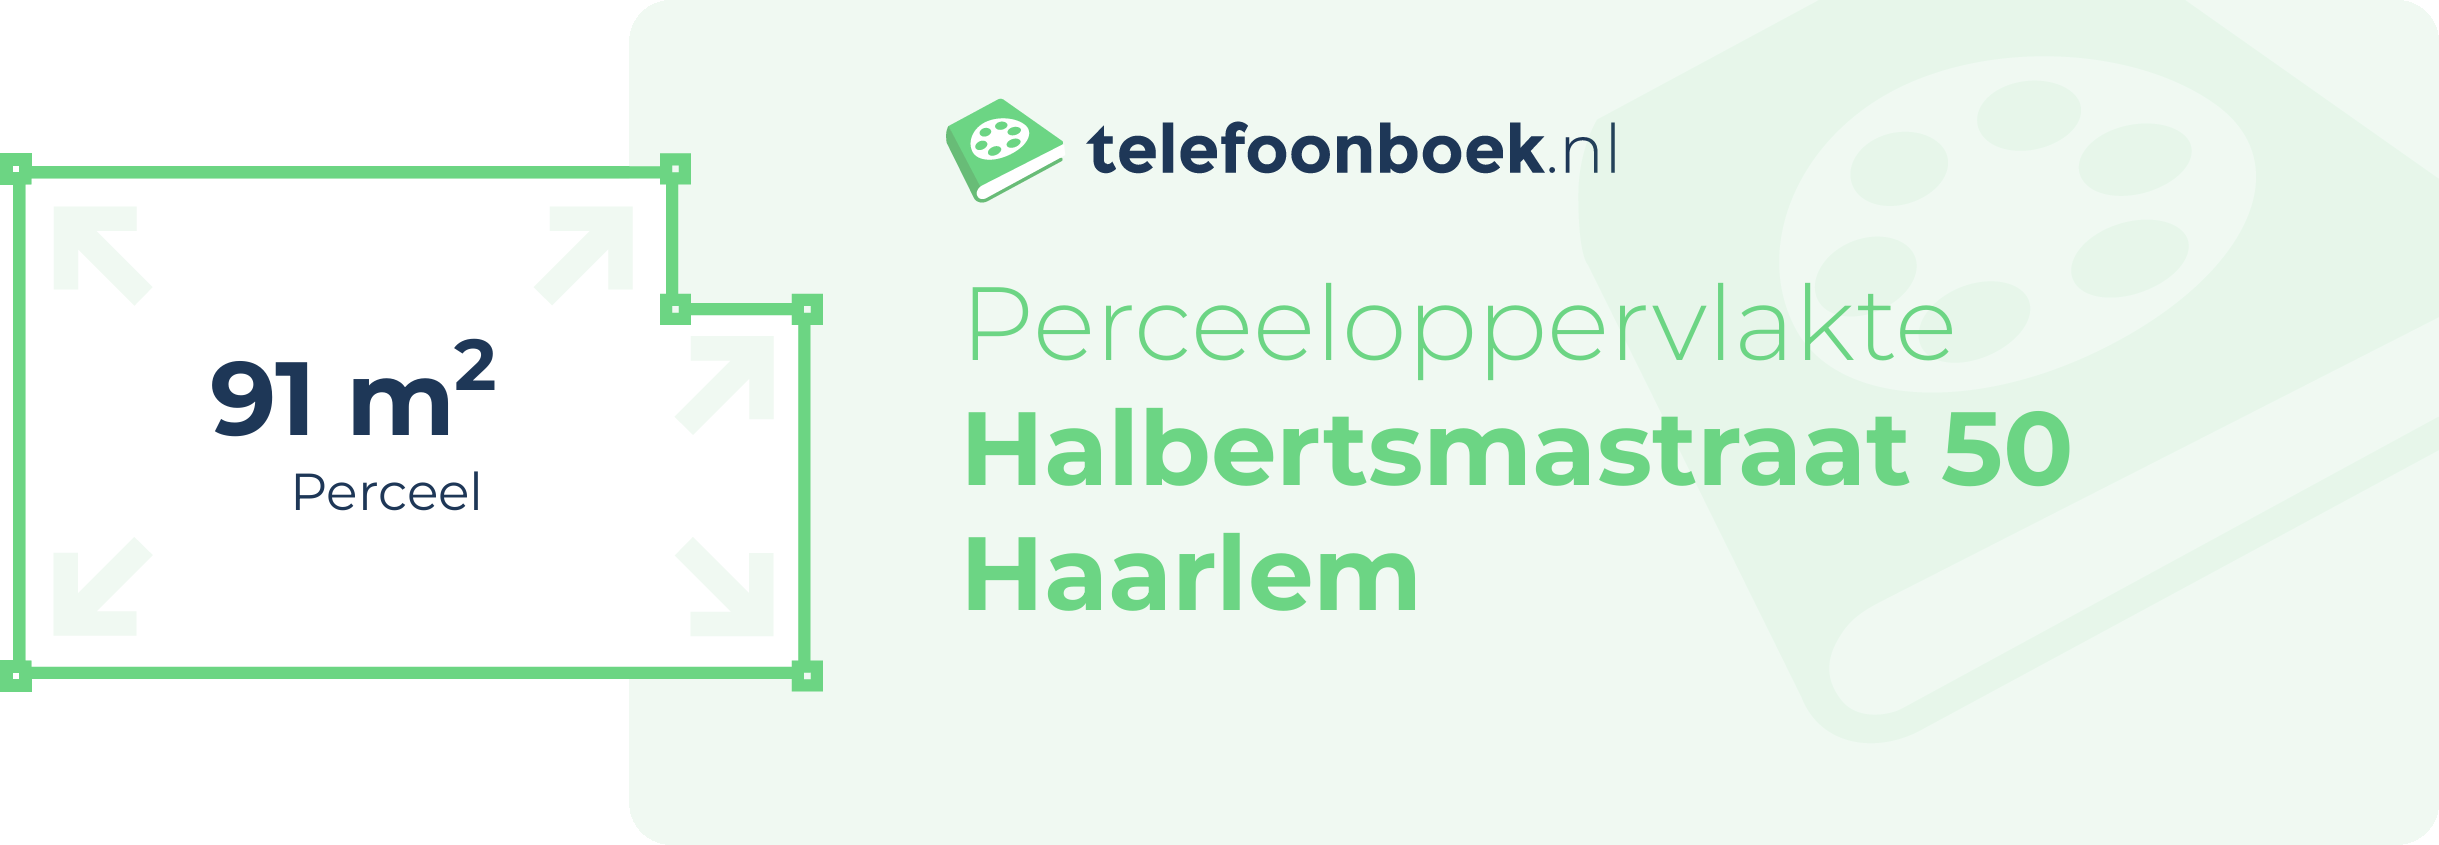 Perceeloppervlakte Halbertsmastraat 50 Haarlem